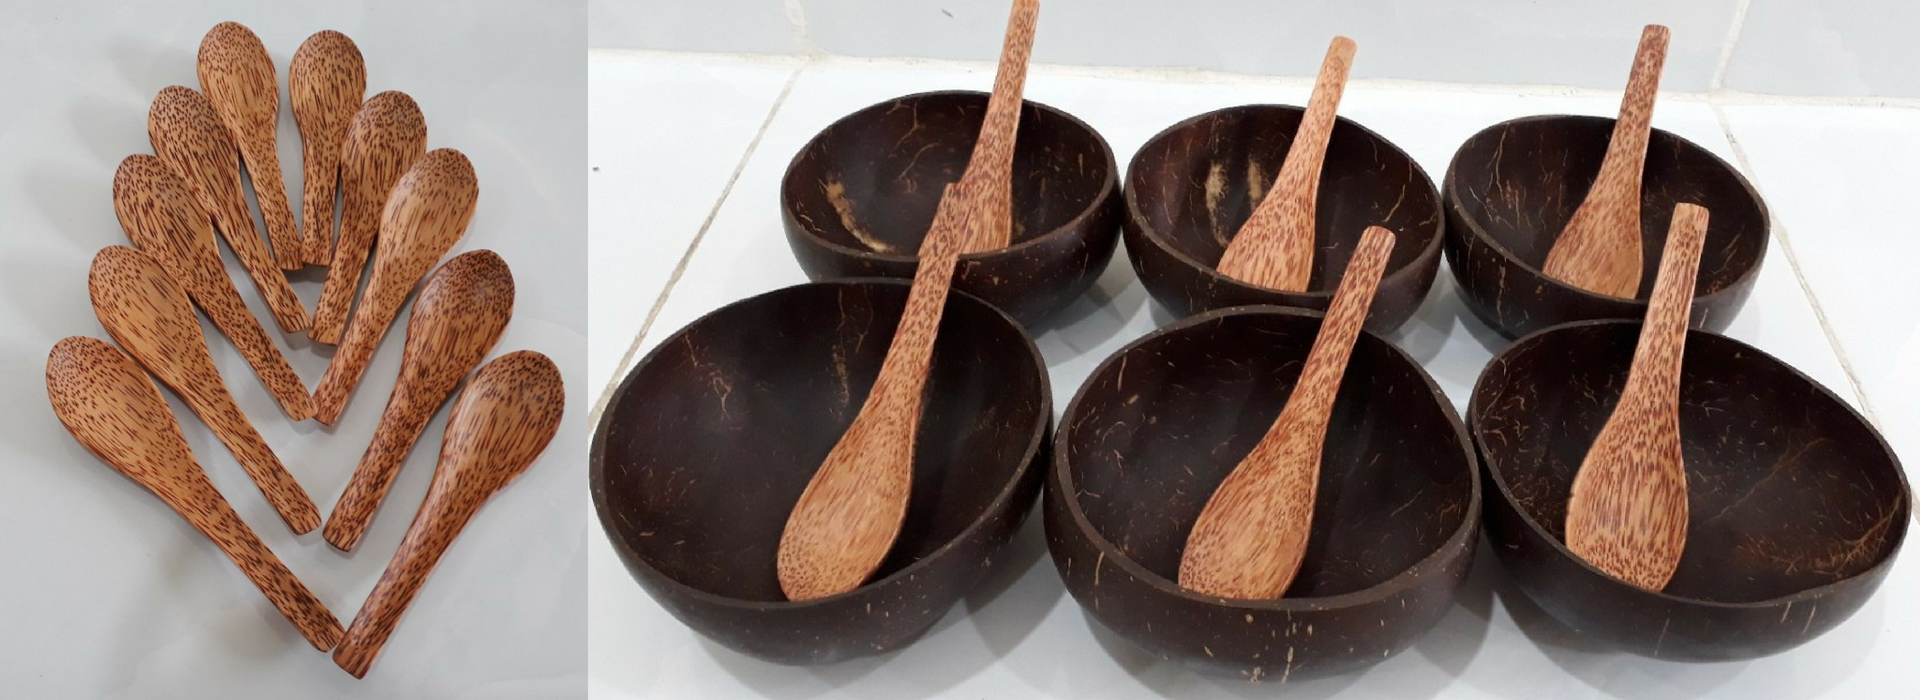 Bộ sản phẩm bát gáo muỗng gỗ dừa mỹ nghệ